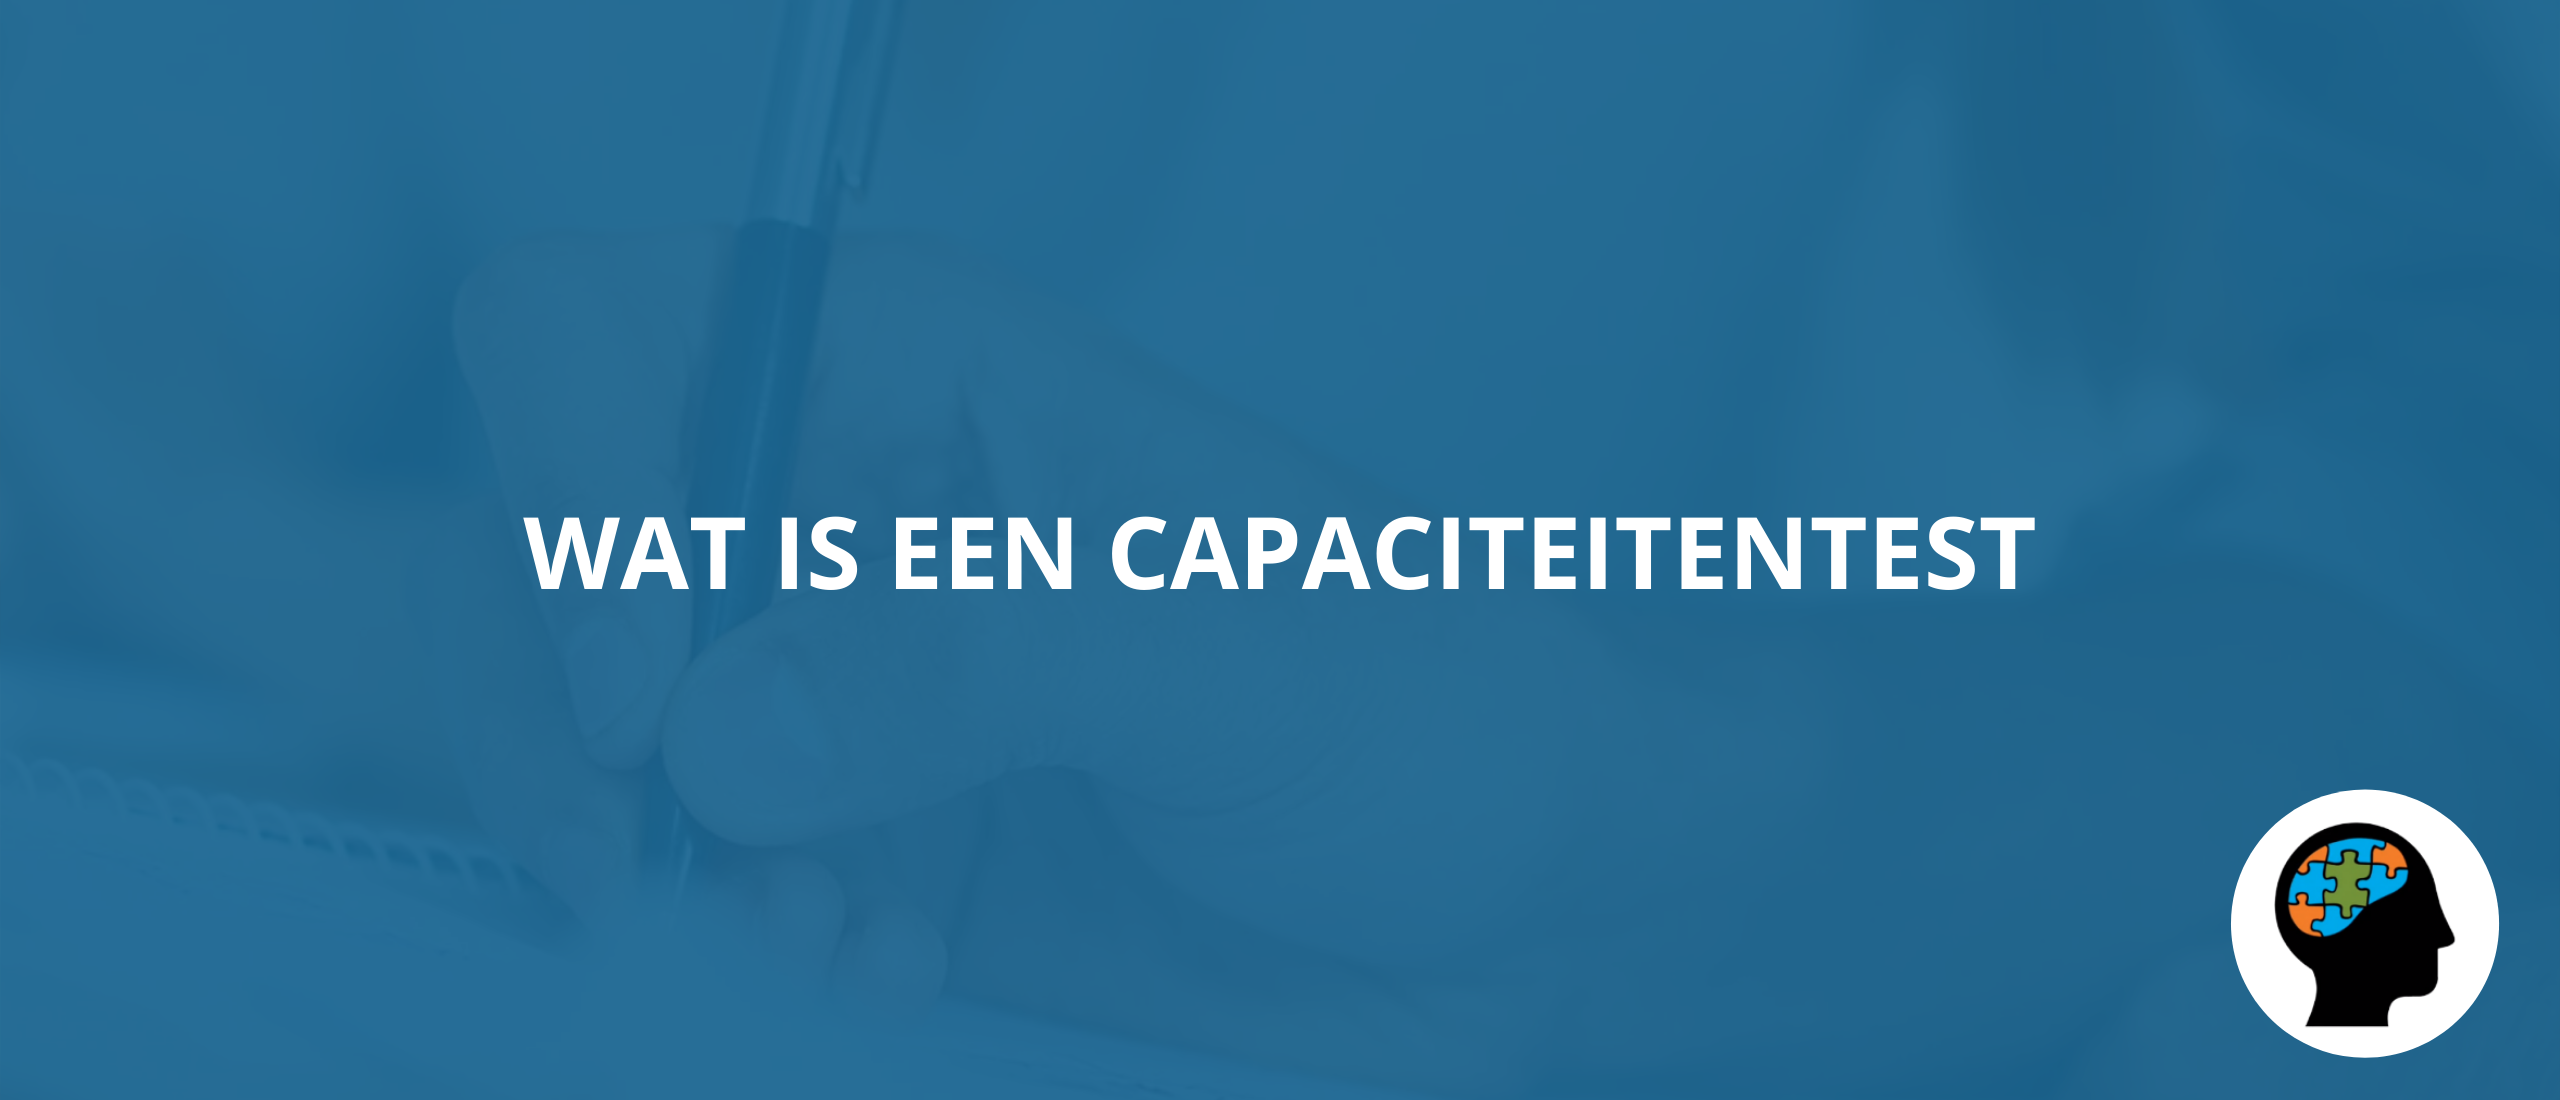 Wat is een capaciteitentest?